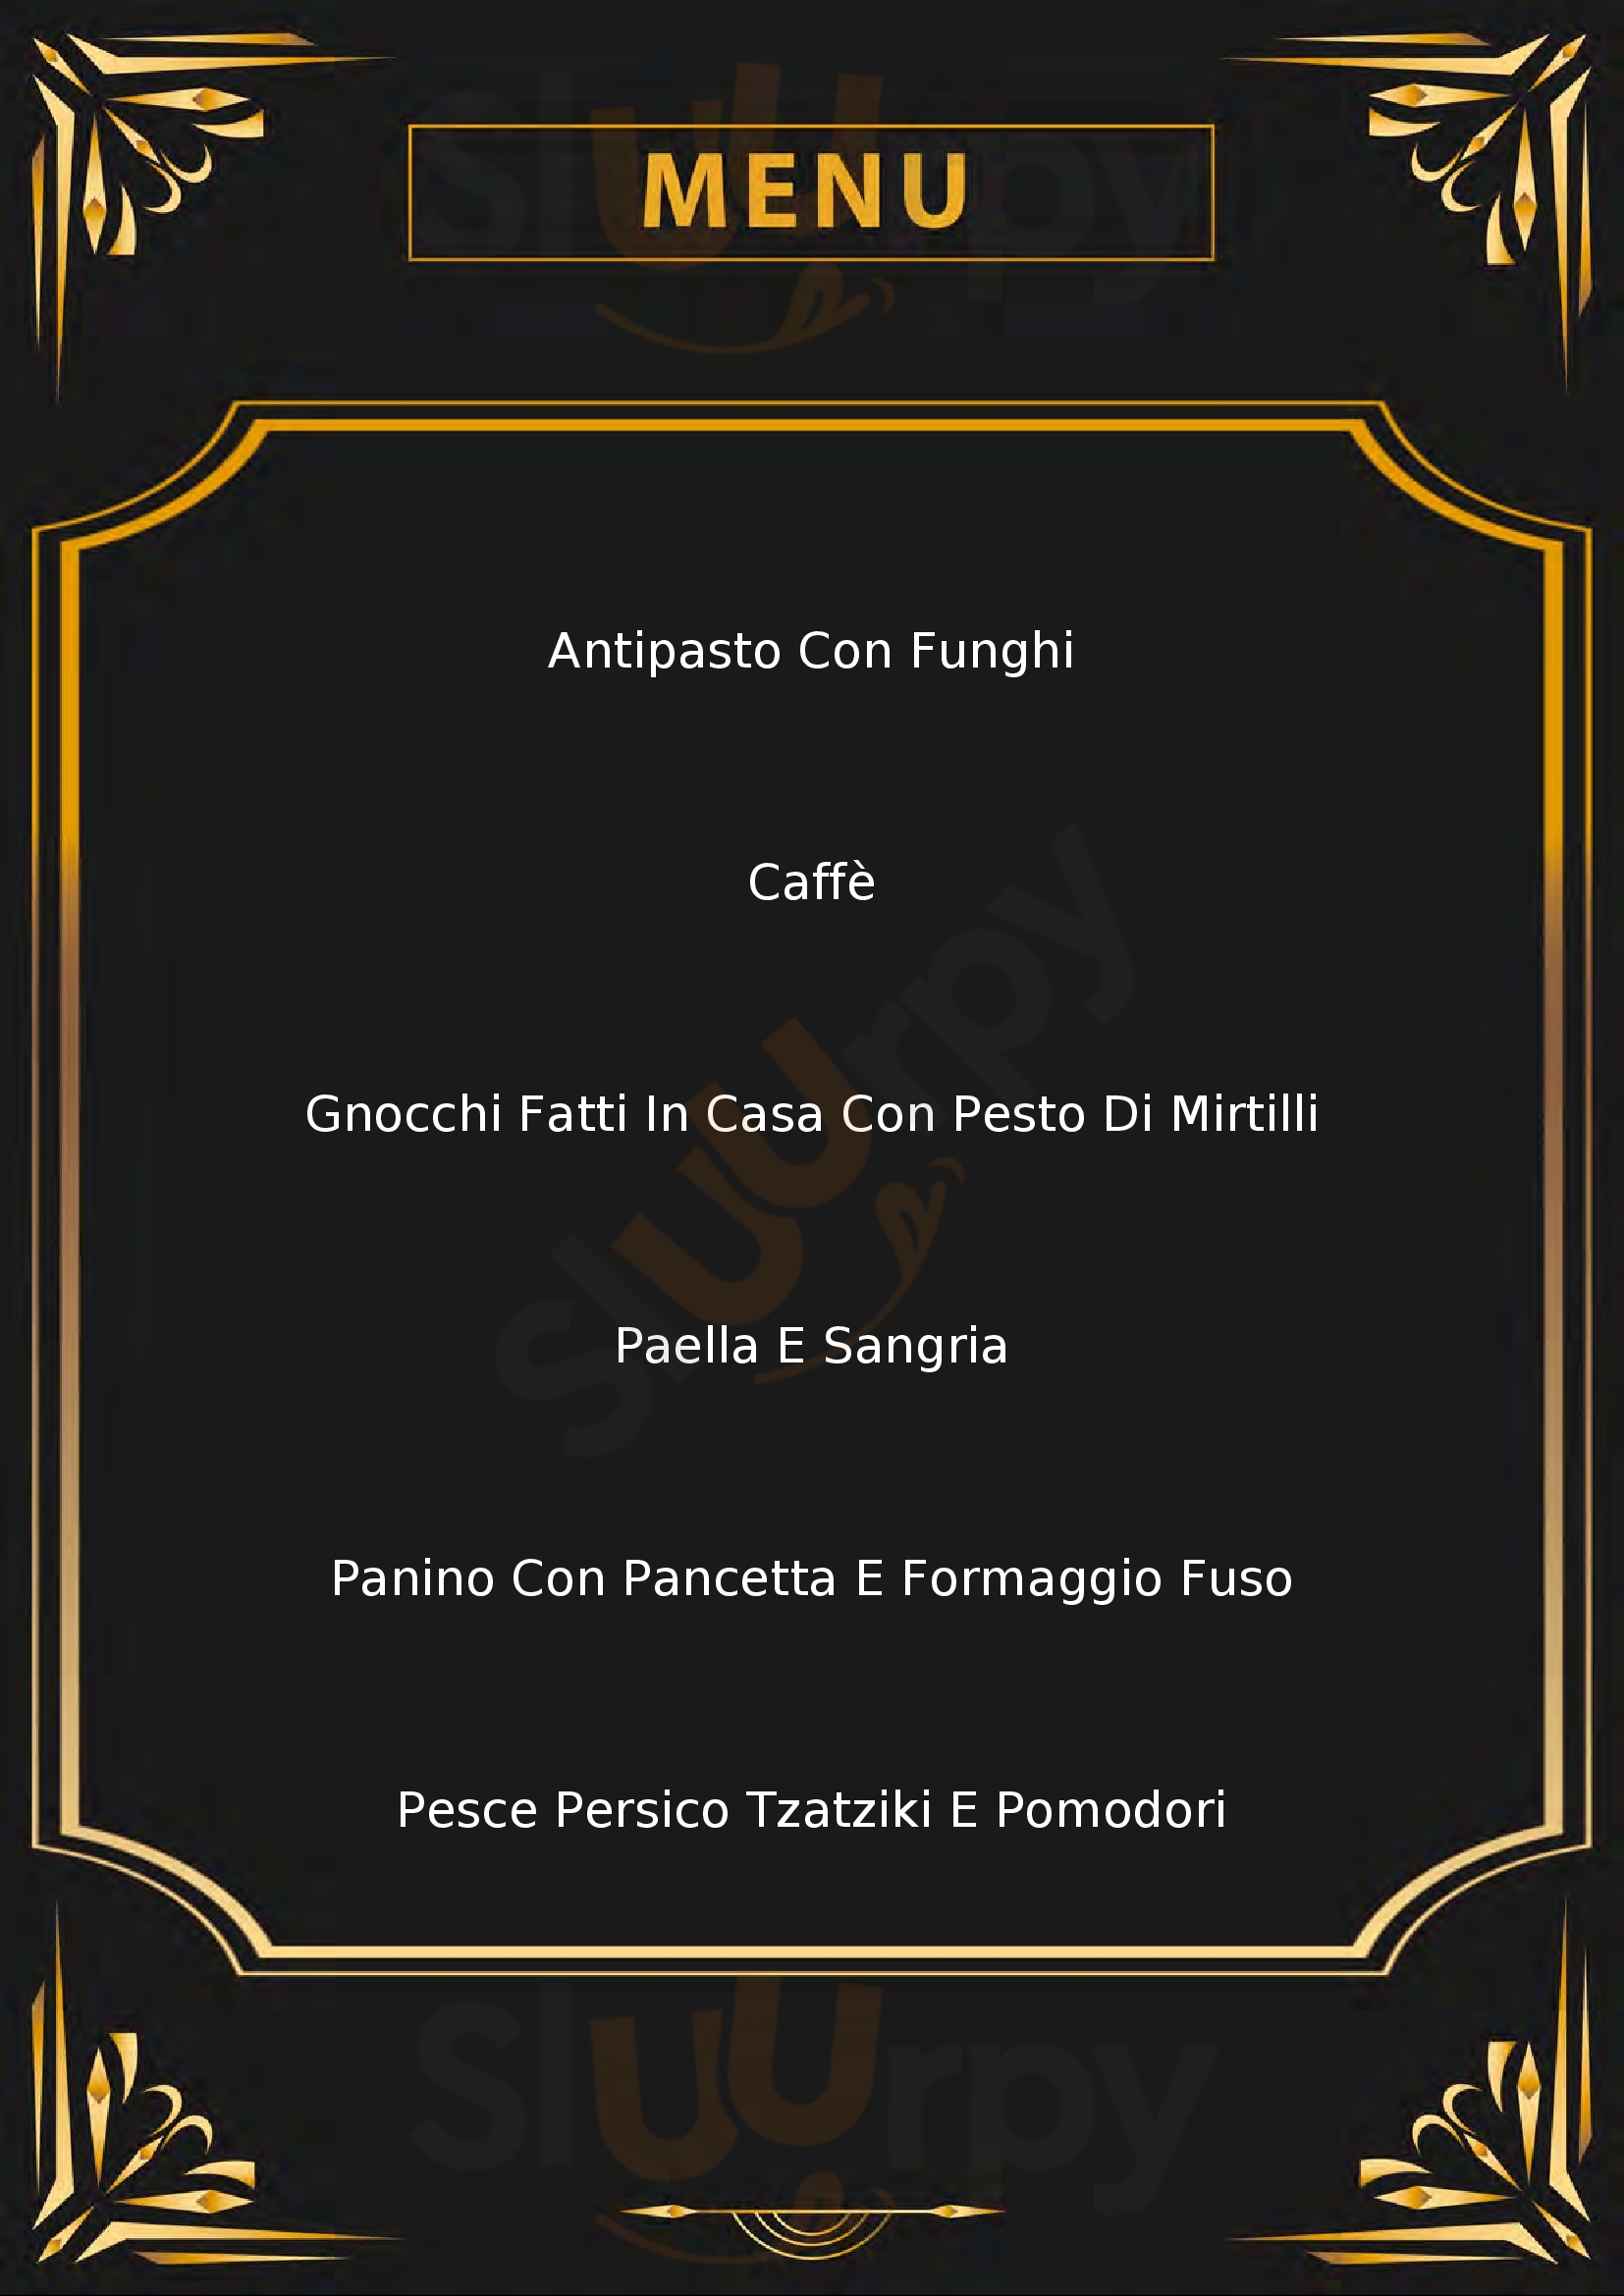 Osteria Santa Margherita Crocetta del Montello menù 1 pagina